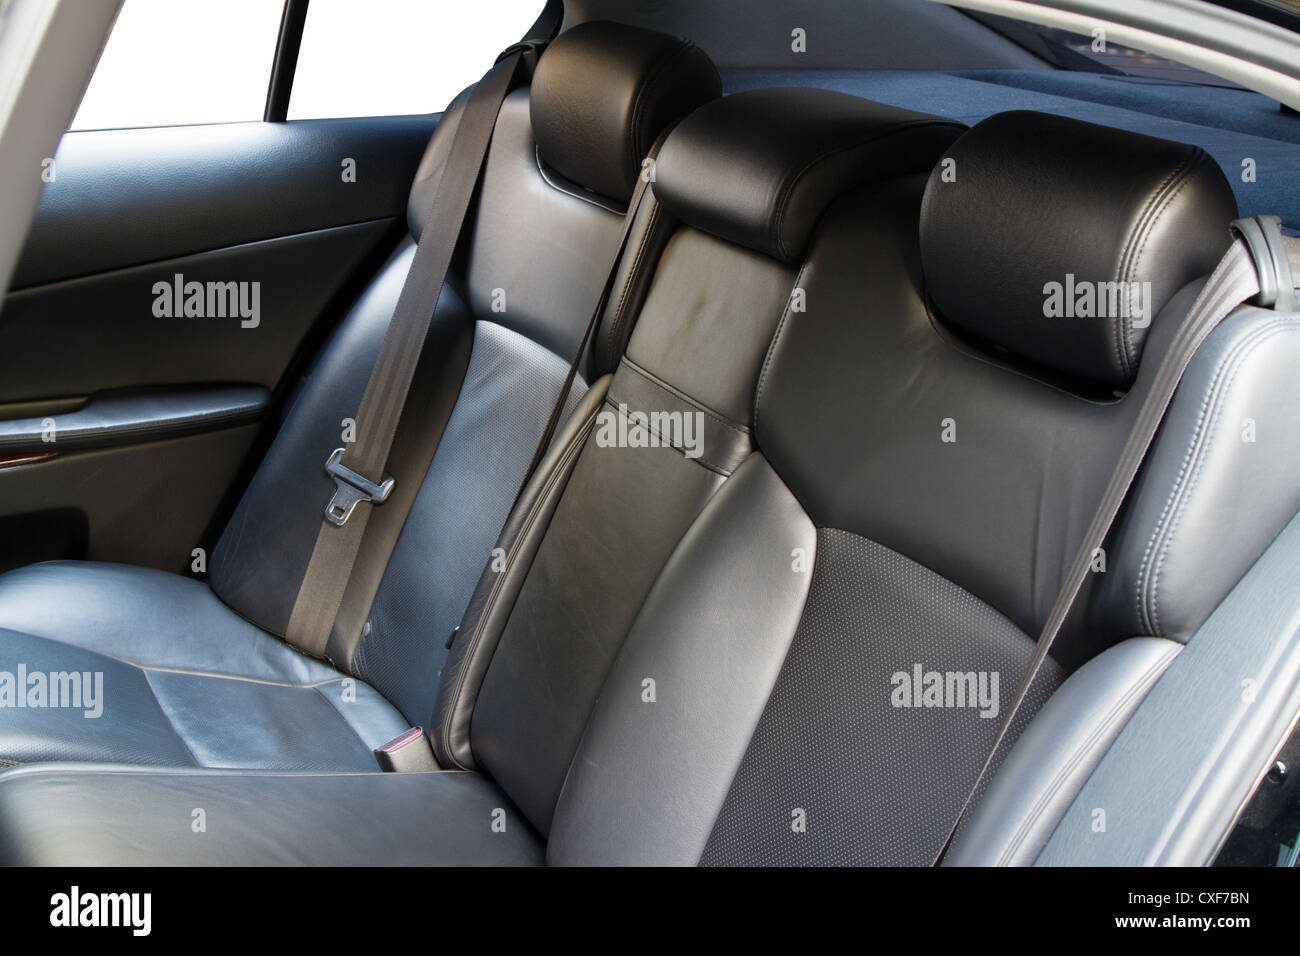 https://c8.alamy.com/comp/CXF7BN/leather-back-car-seats-with-active-headrest-CXF7BN.jpg